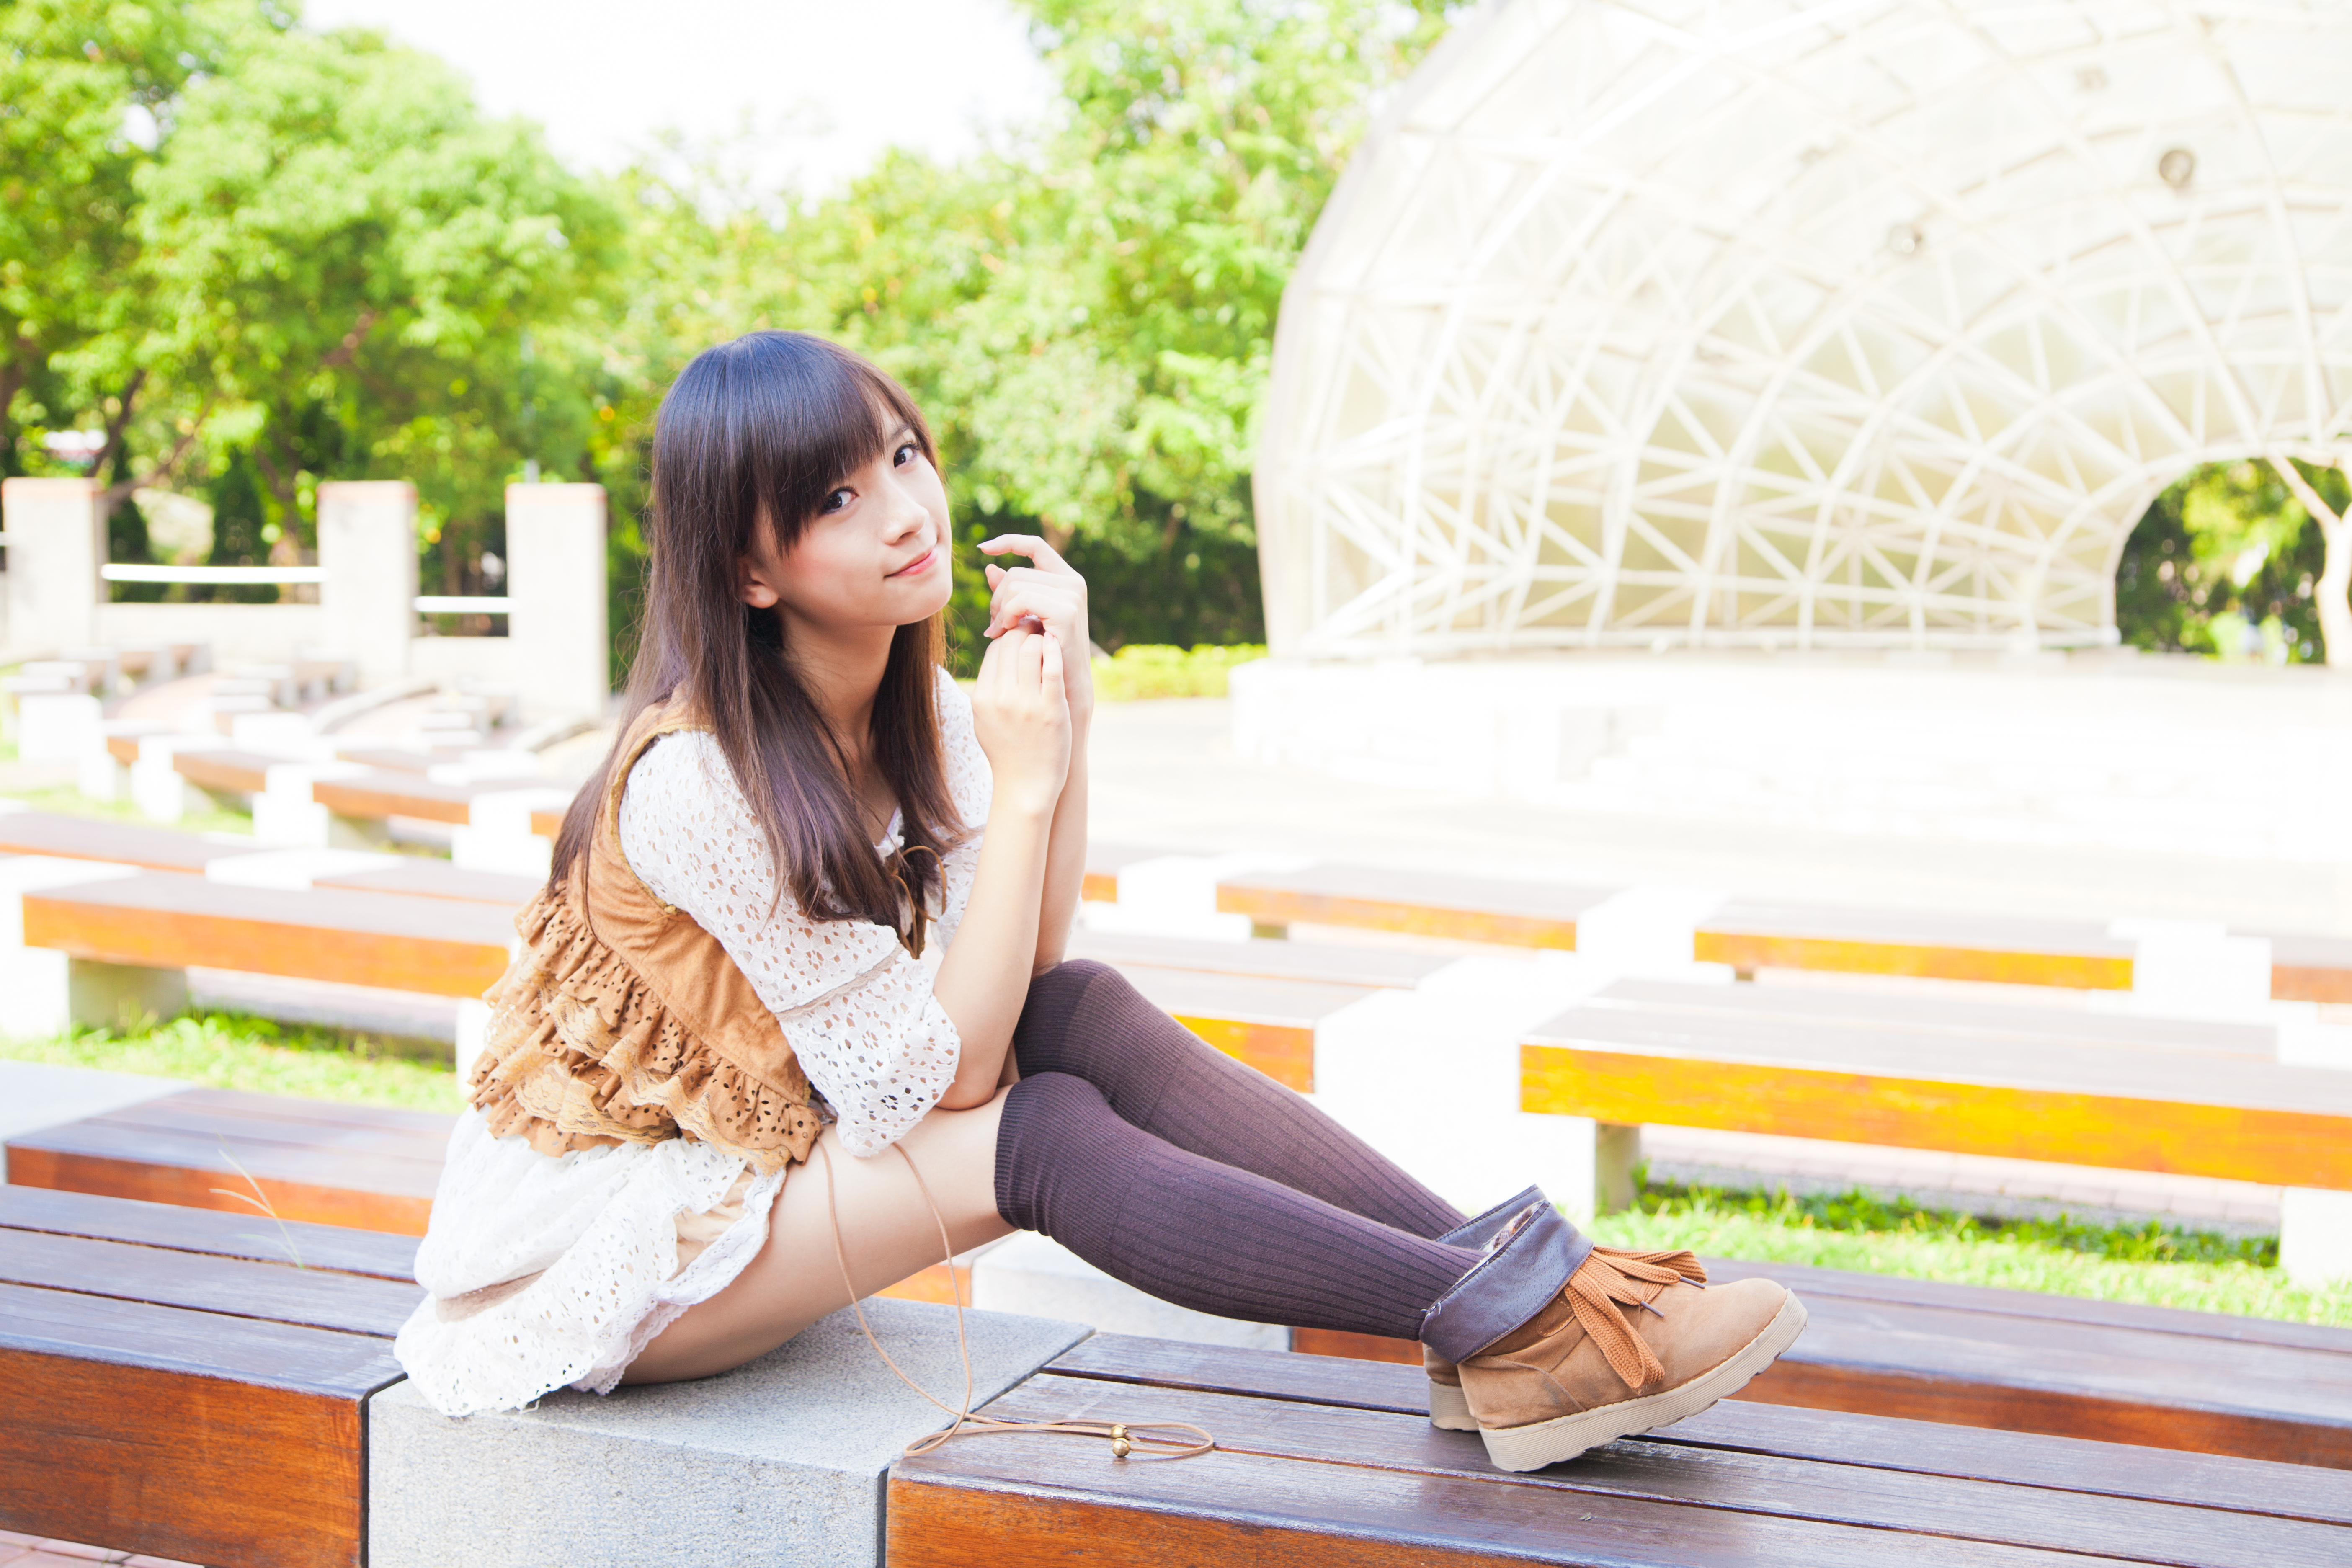 People 5616x3744 Taiwanese model women xiaojing brunette Asian long hair thigh-highs minidress